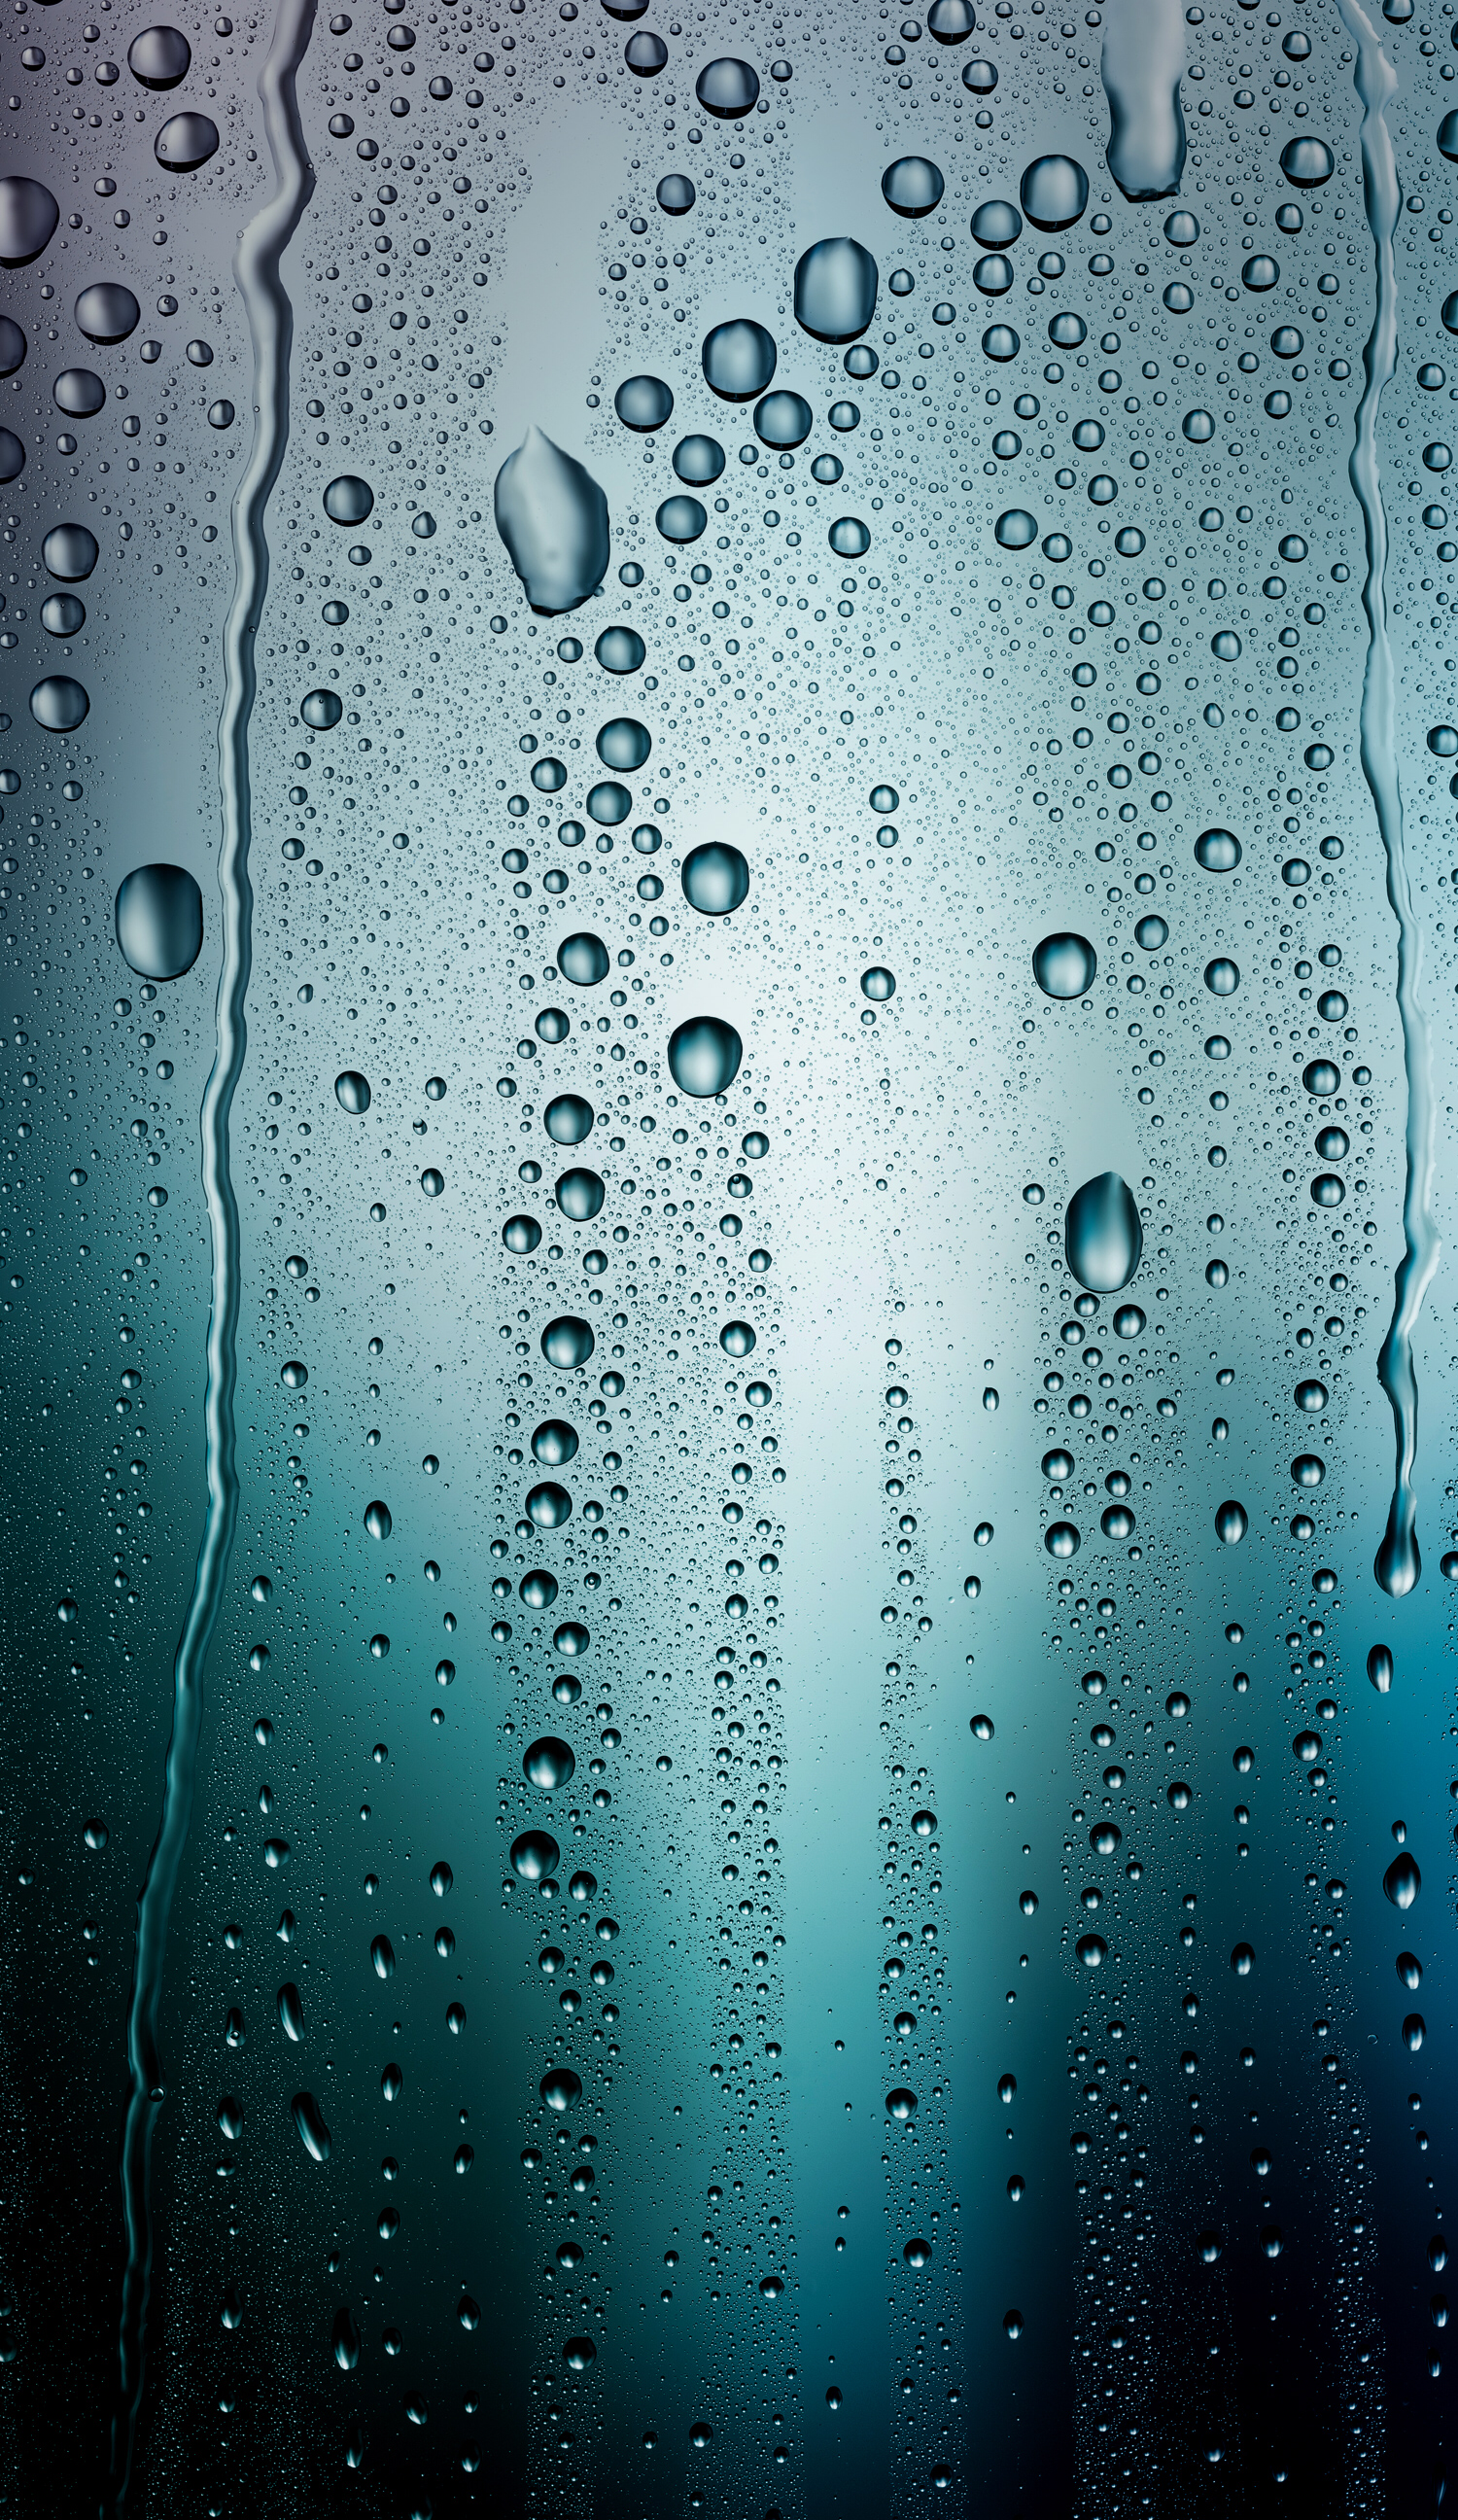 Download Wallpaper - Iphone Wallpaper Rain Drops , HD Wallpaper & Backgrounds